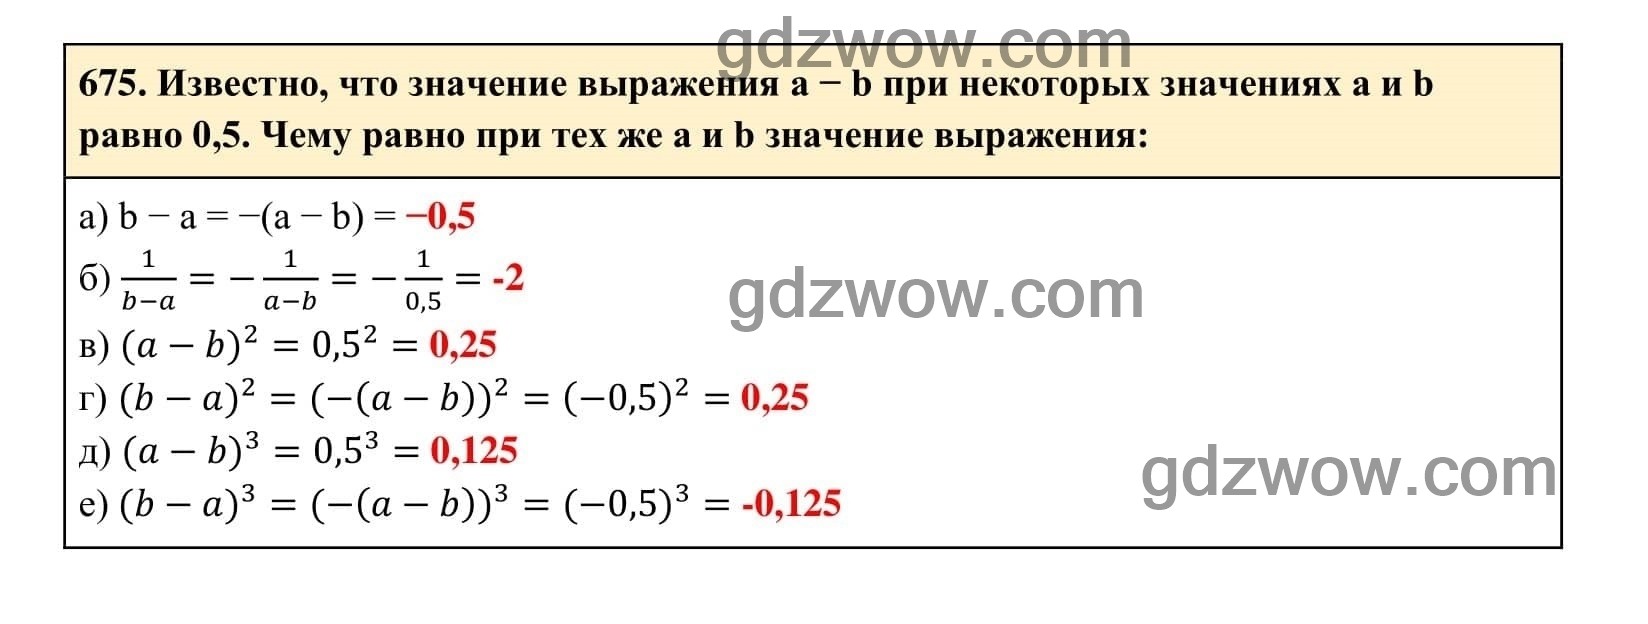 Упражнение 675 - ГДЗ по Алгебре 7 класс Учебник Макарычев (решебник) - GDZwow